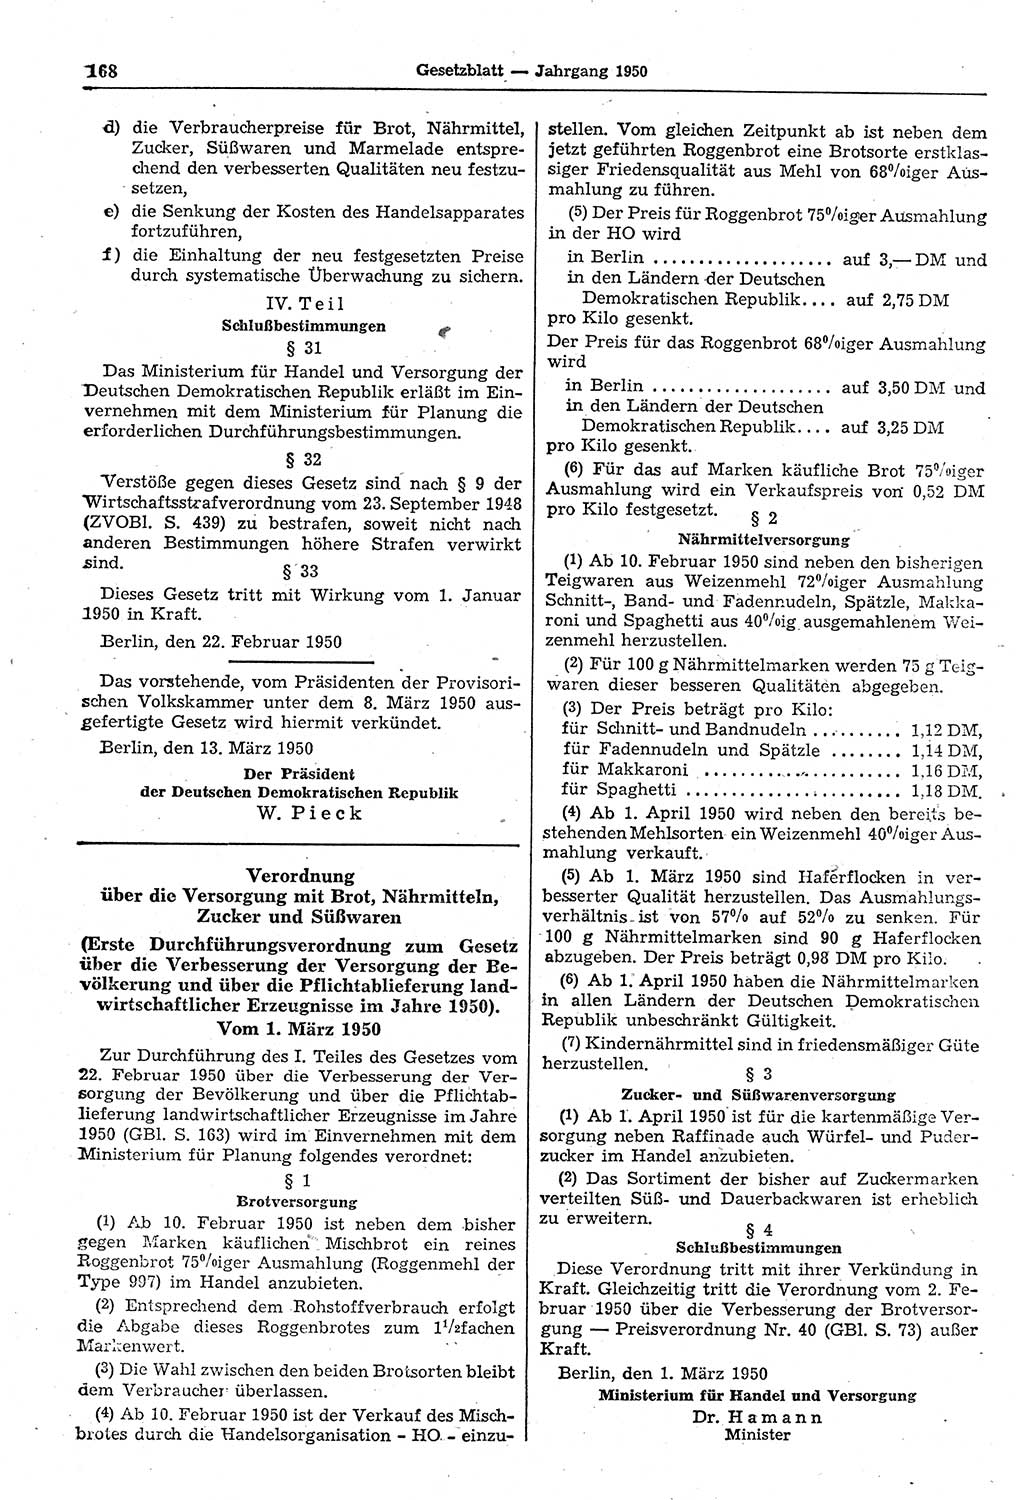 Gesetzblatt (GBl.) der Deutschen Demokratischen Republik (DDR) 1950, Seite 168 (GBl. DDR 1950, S. 168)